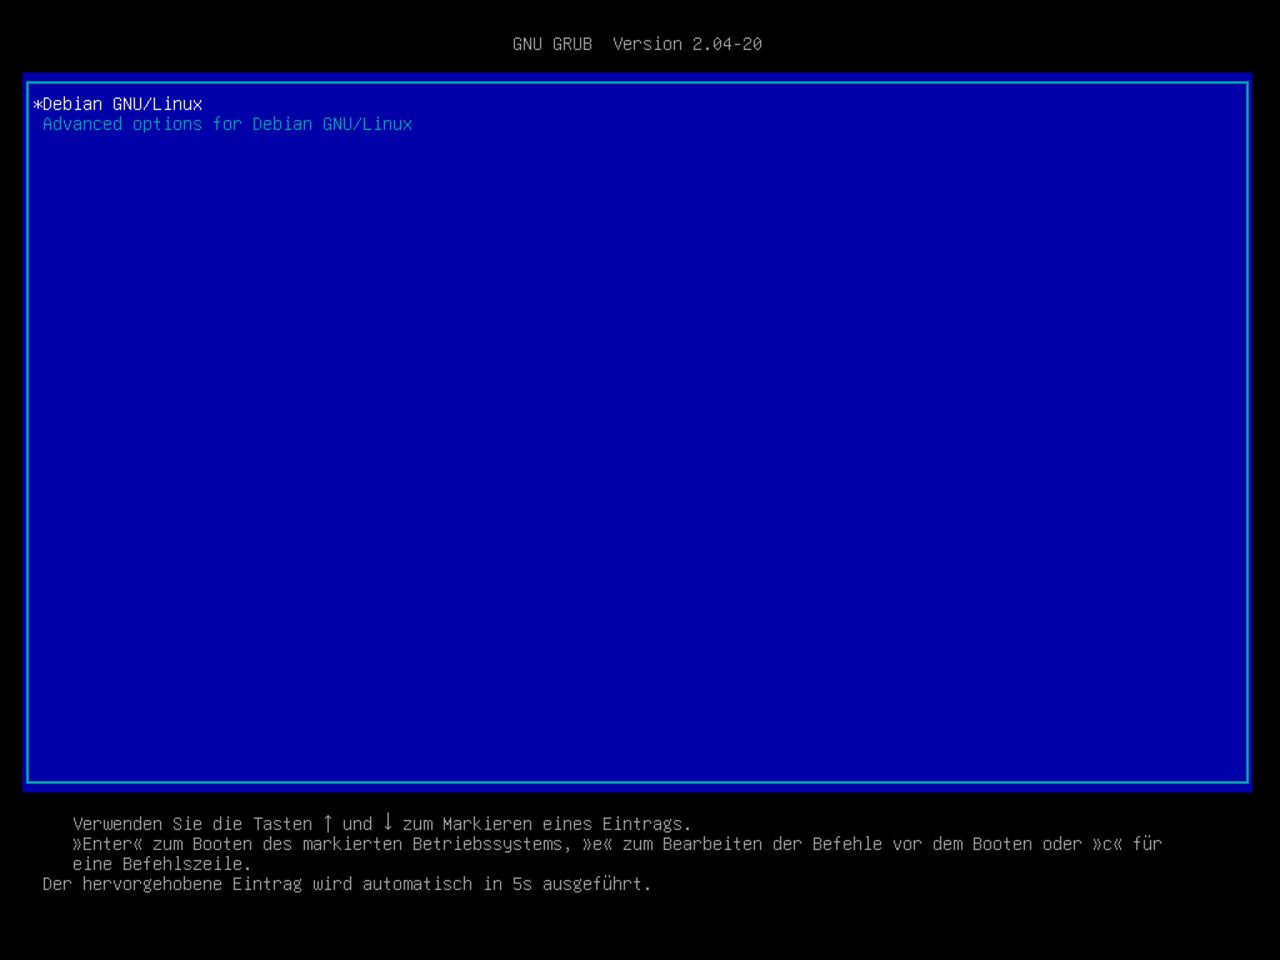 Mein erster Linux-Laptop - Erster Neustart des Systems, um mit der Debian-Installation fortzufahren